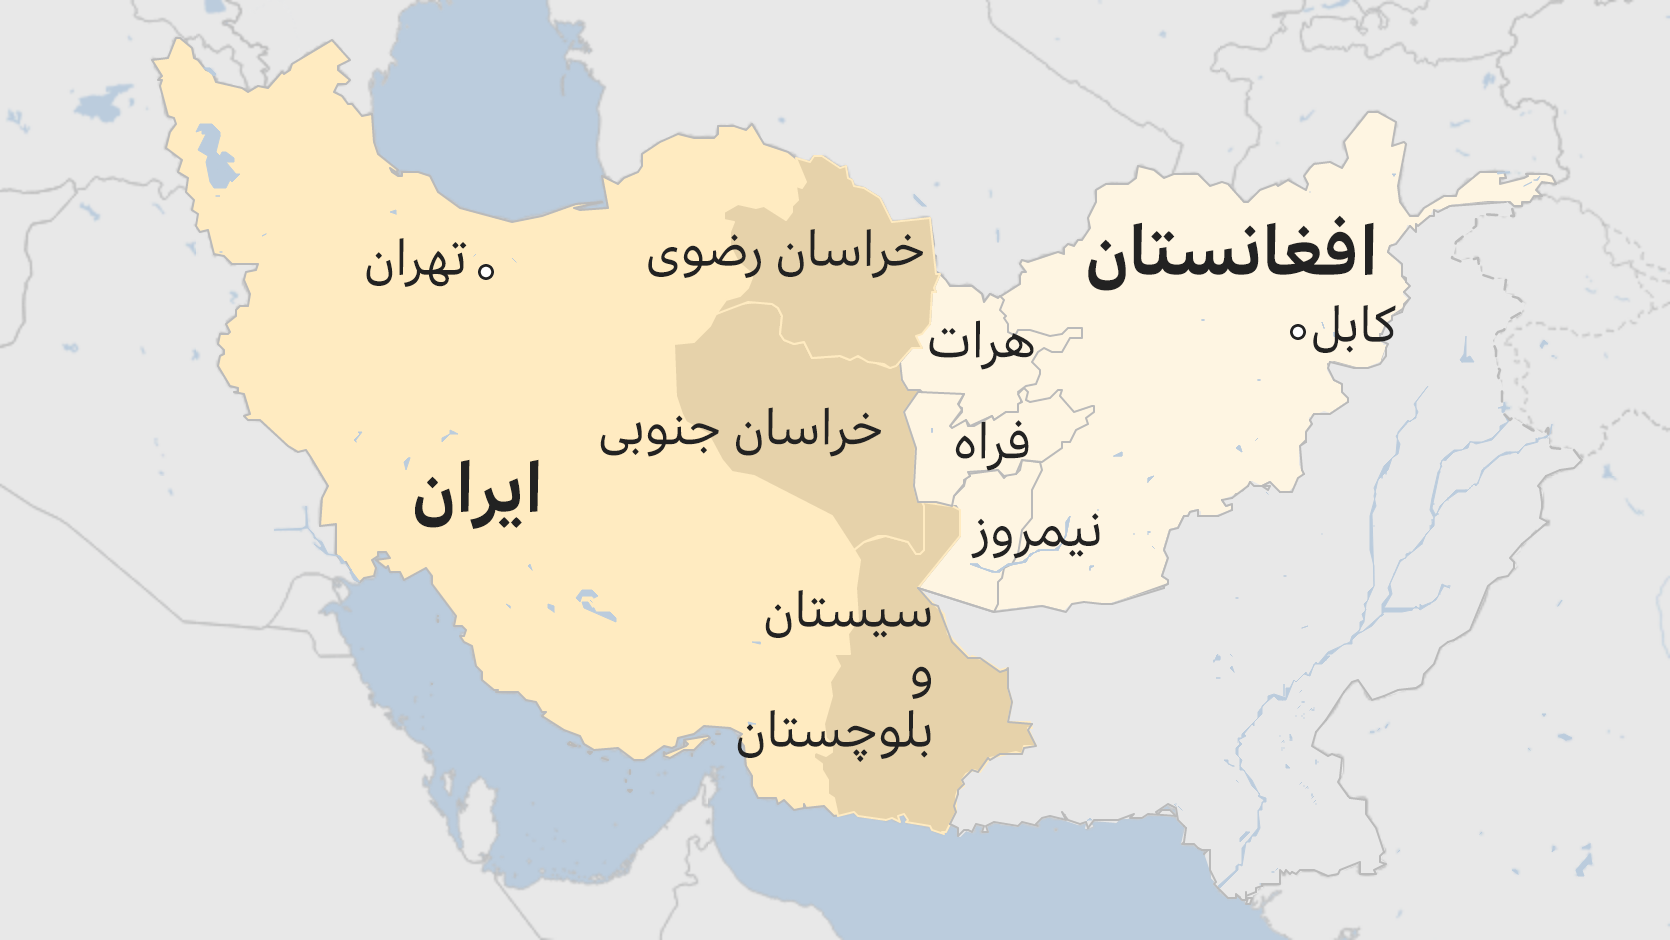 دیدار مسئولان ایران و افغانستان پس از تنش مرزی میان دو کشور Bbc News